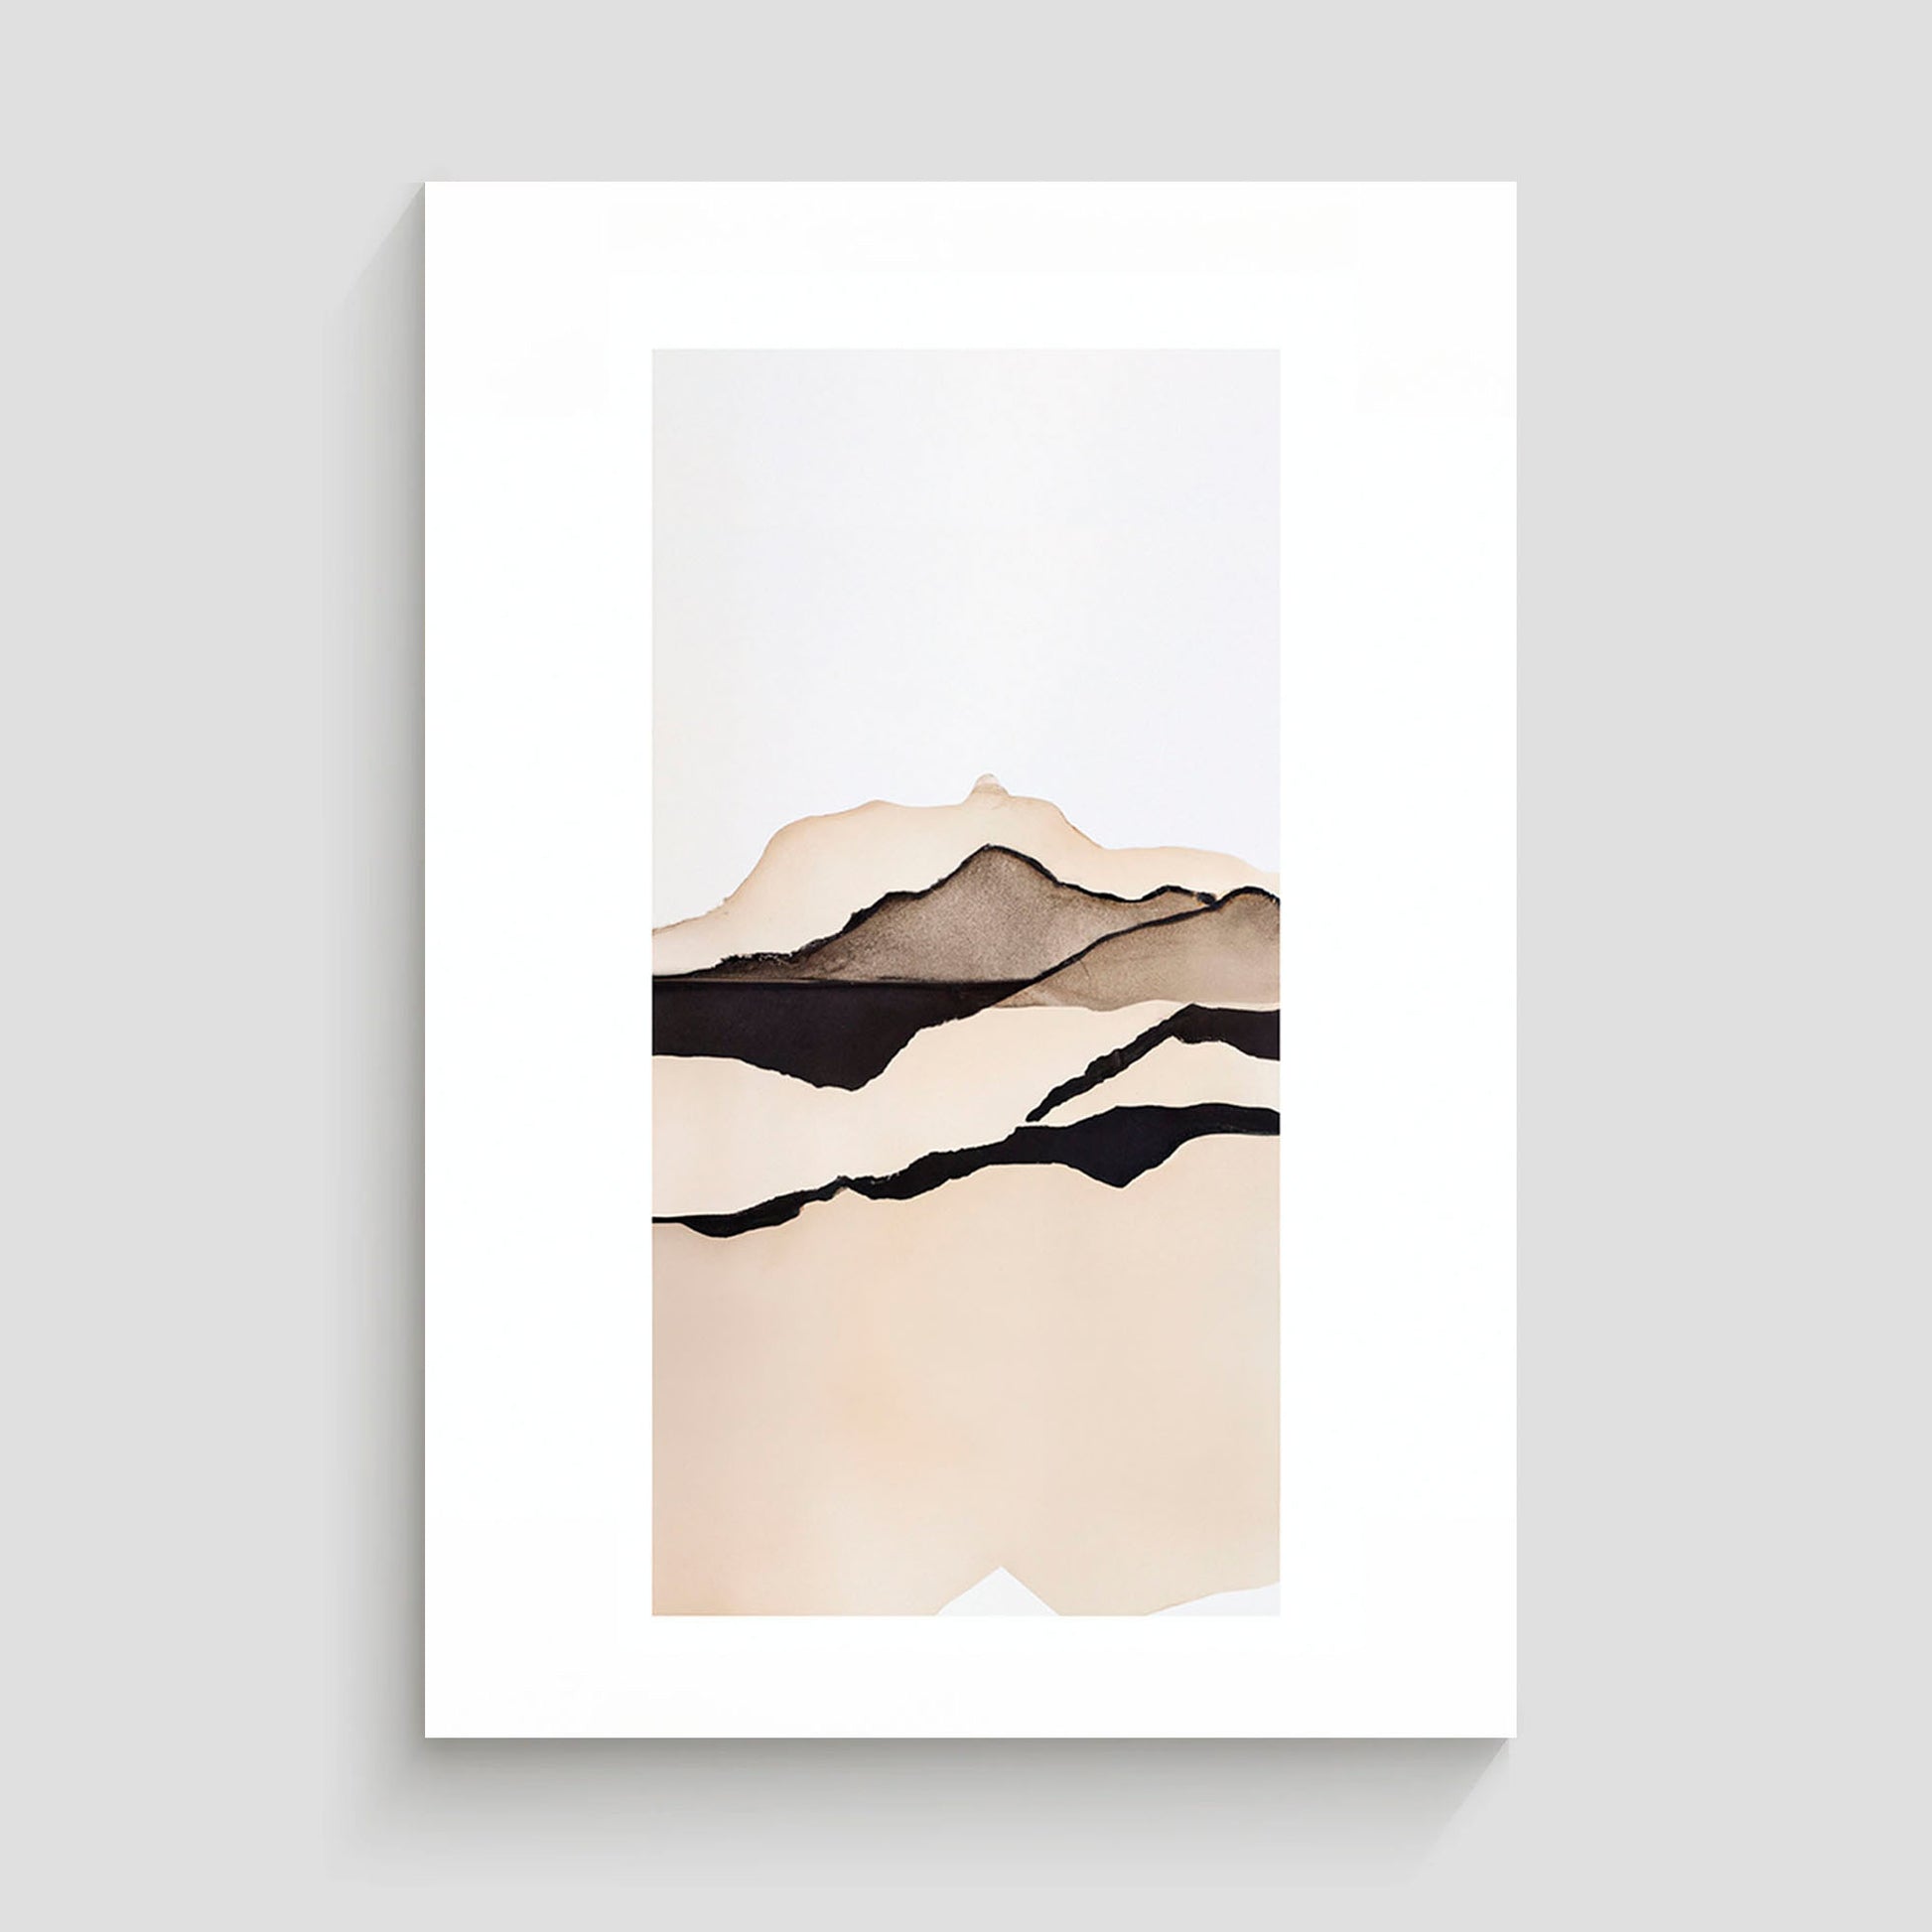 Imagen minimalista de un paisaje de montañas con tonos marrones y negros en un fondo blanco, mostrando líneas simples y elegantes para representar la silueta de las montañas.